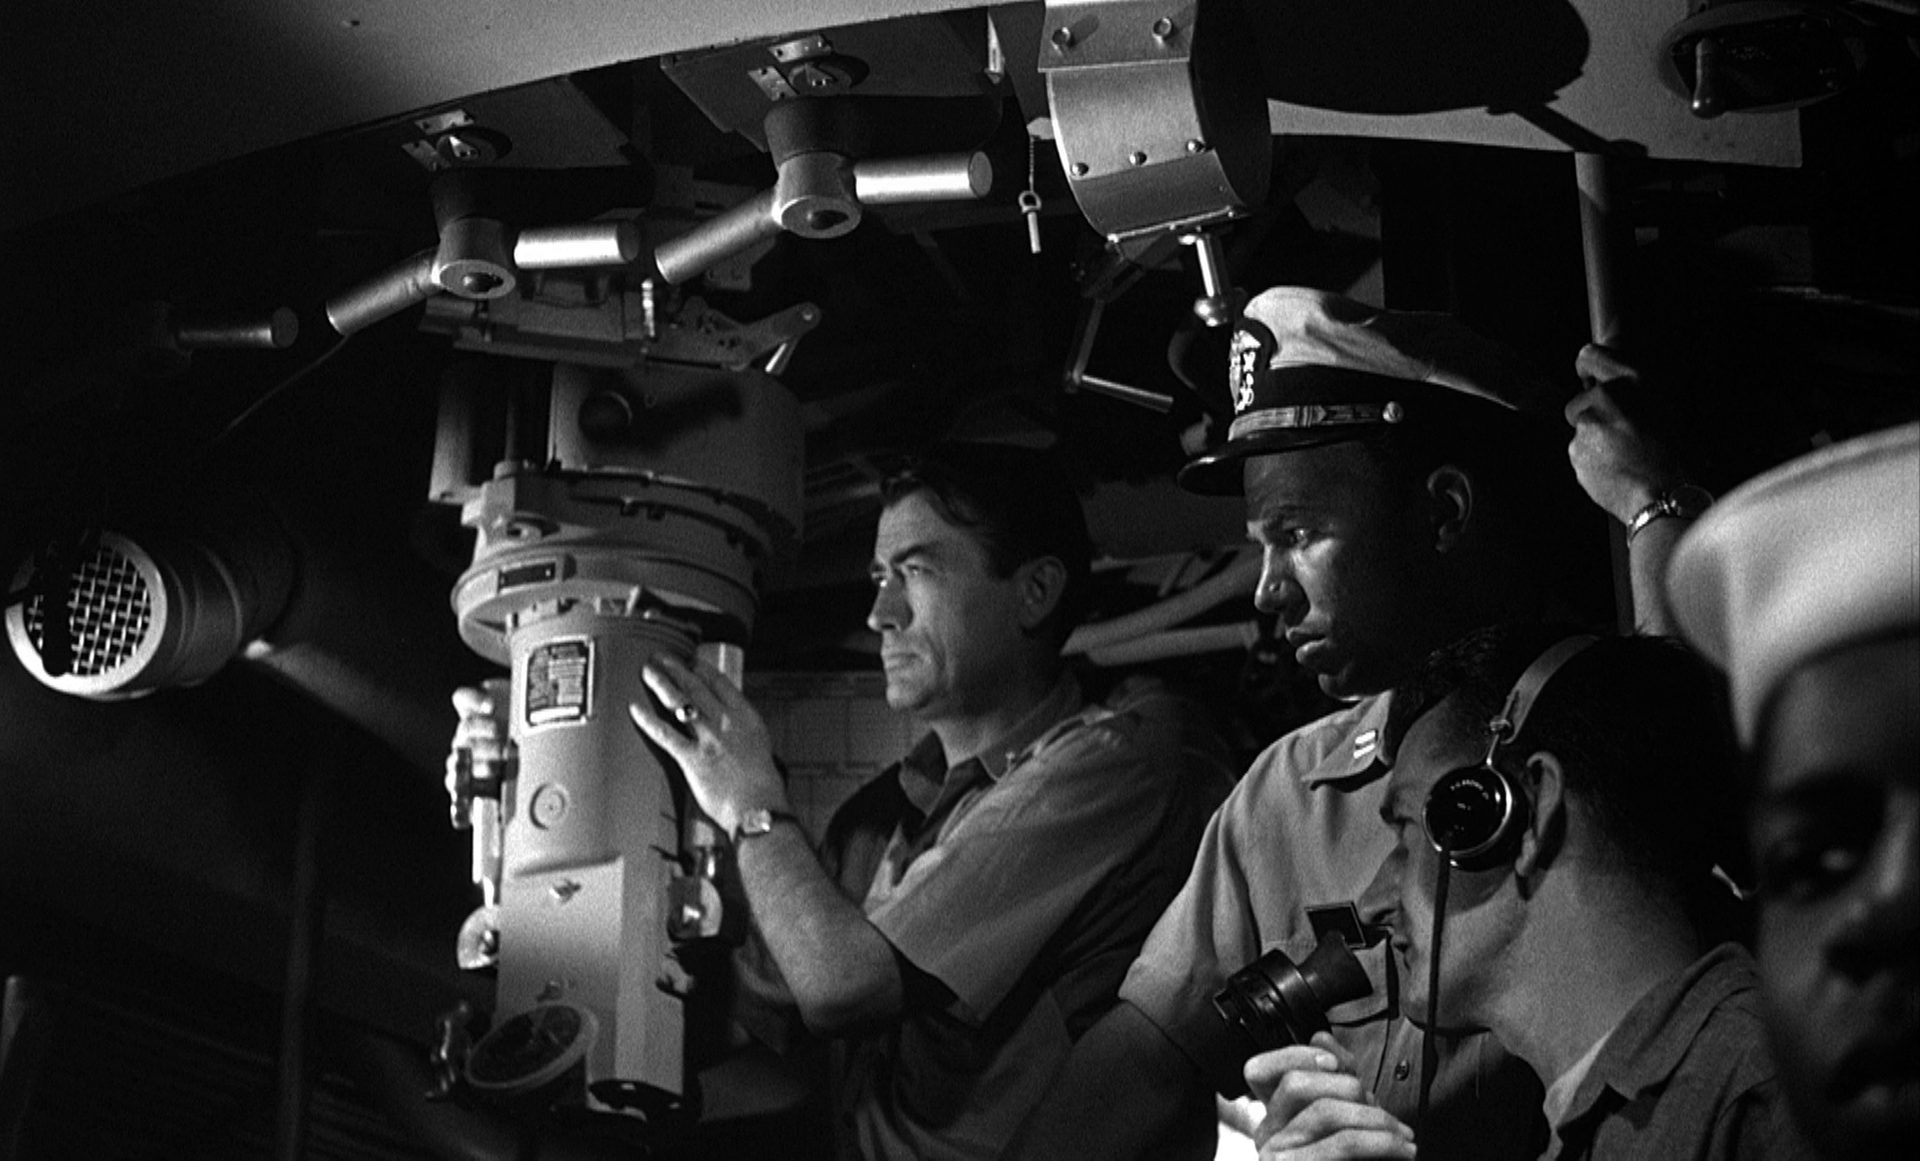 Beklemmende Schwarz-Weiß-Aufnahme aus dem U-Boot-Innern, mit Gregory Peck als Kommandanten im Beisein einiger Seeleute.